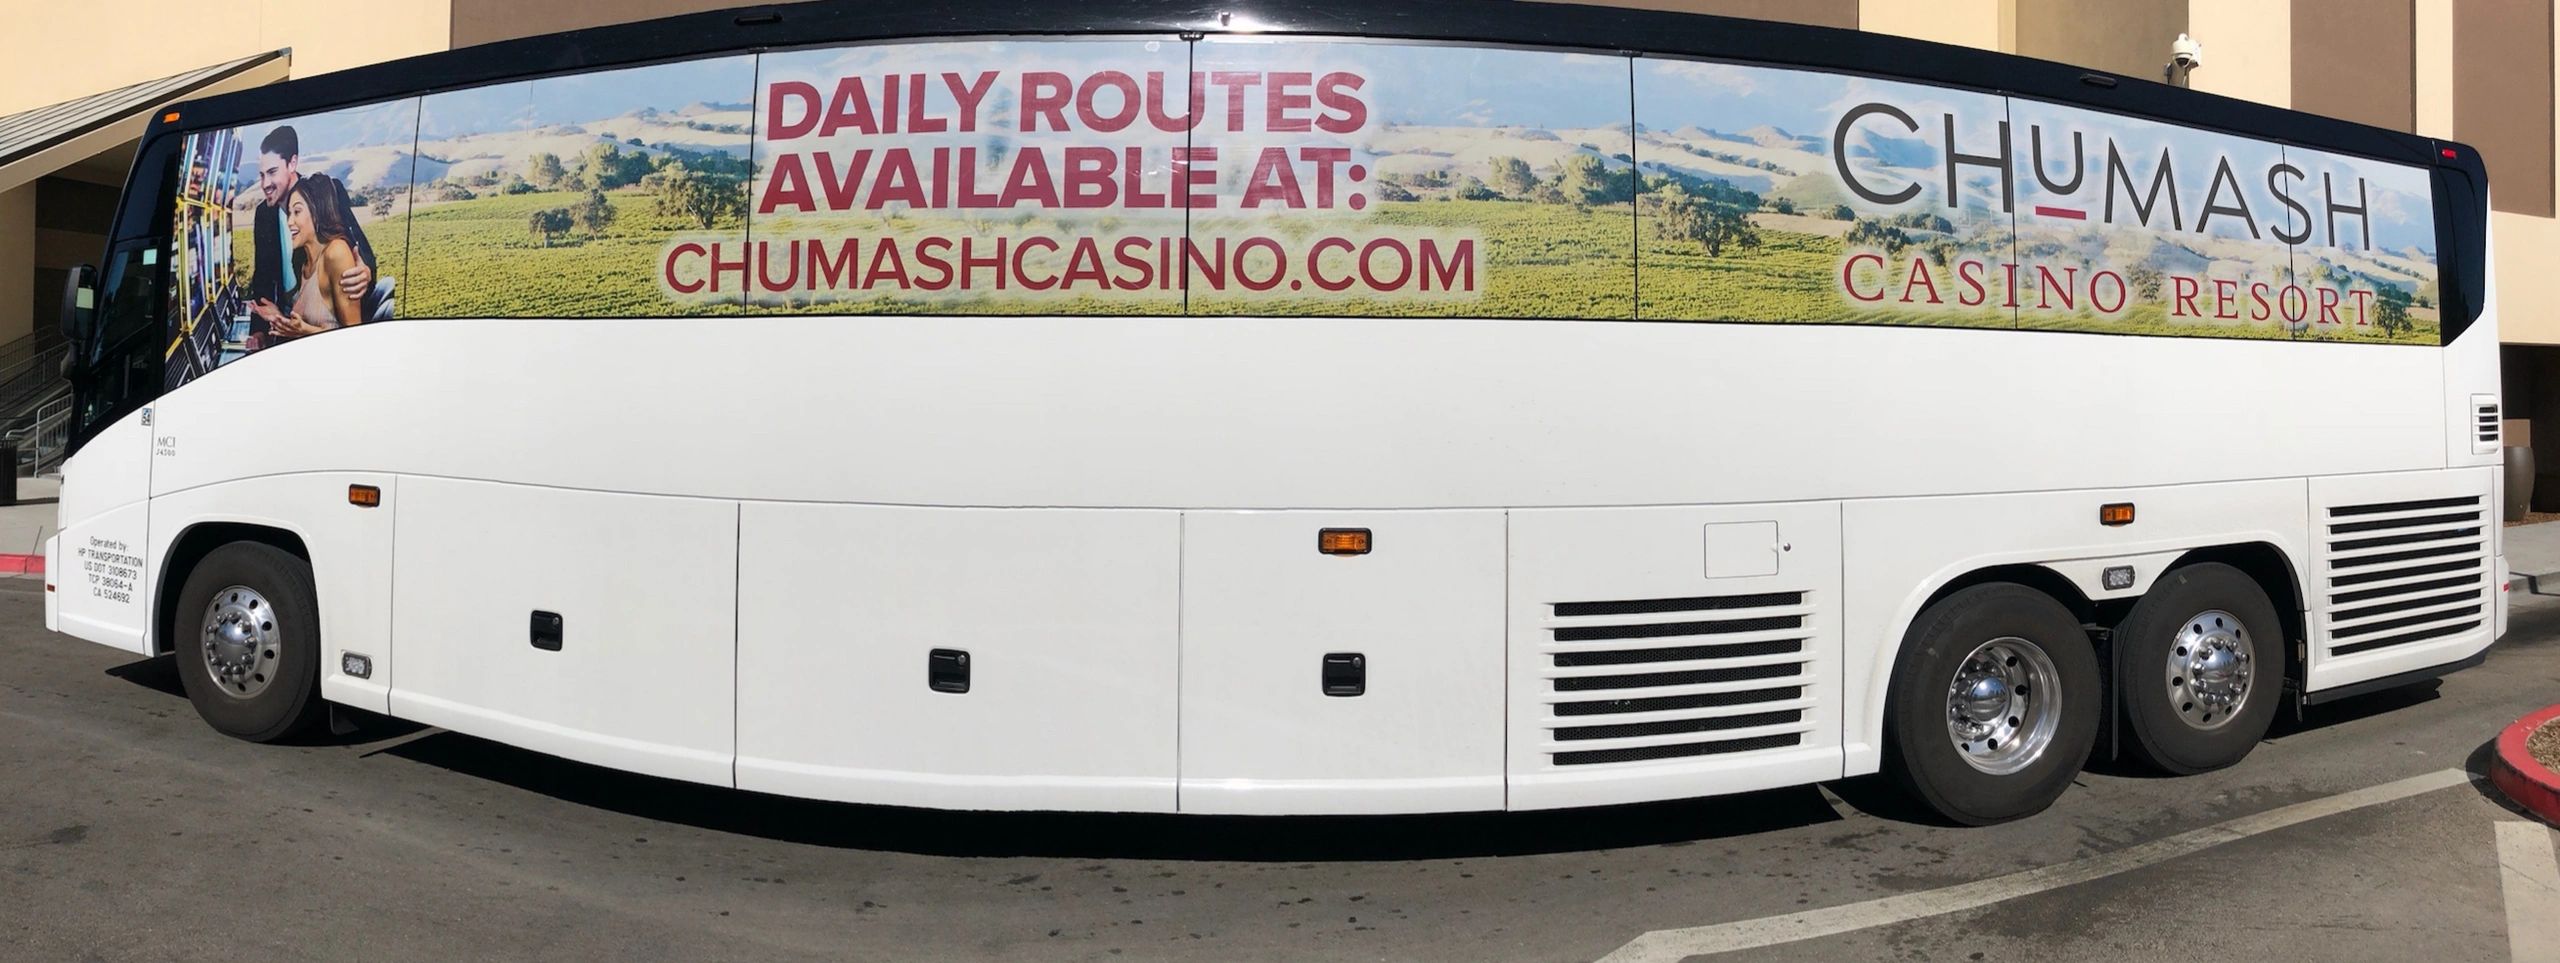 resorts world casino shuttle bus